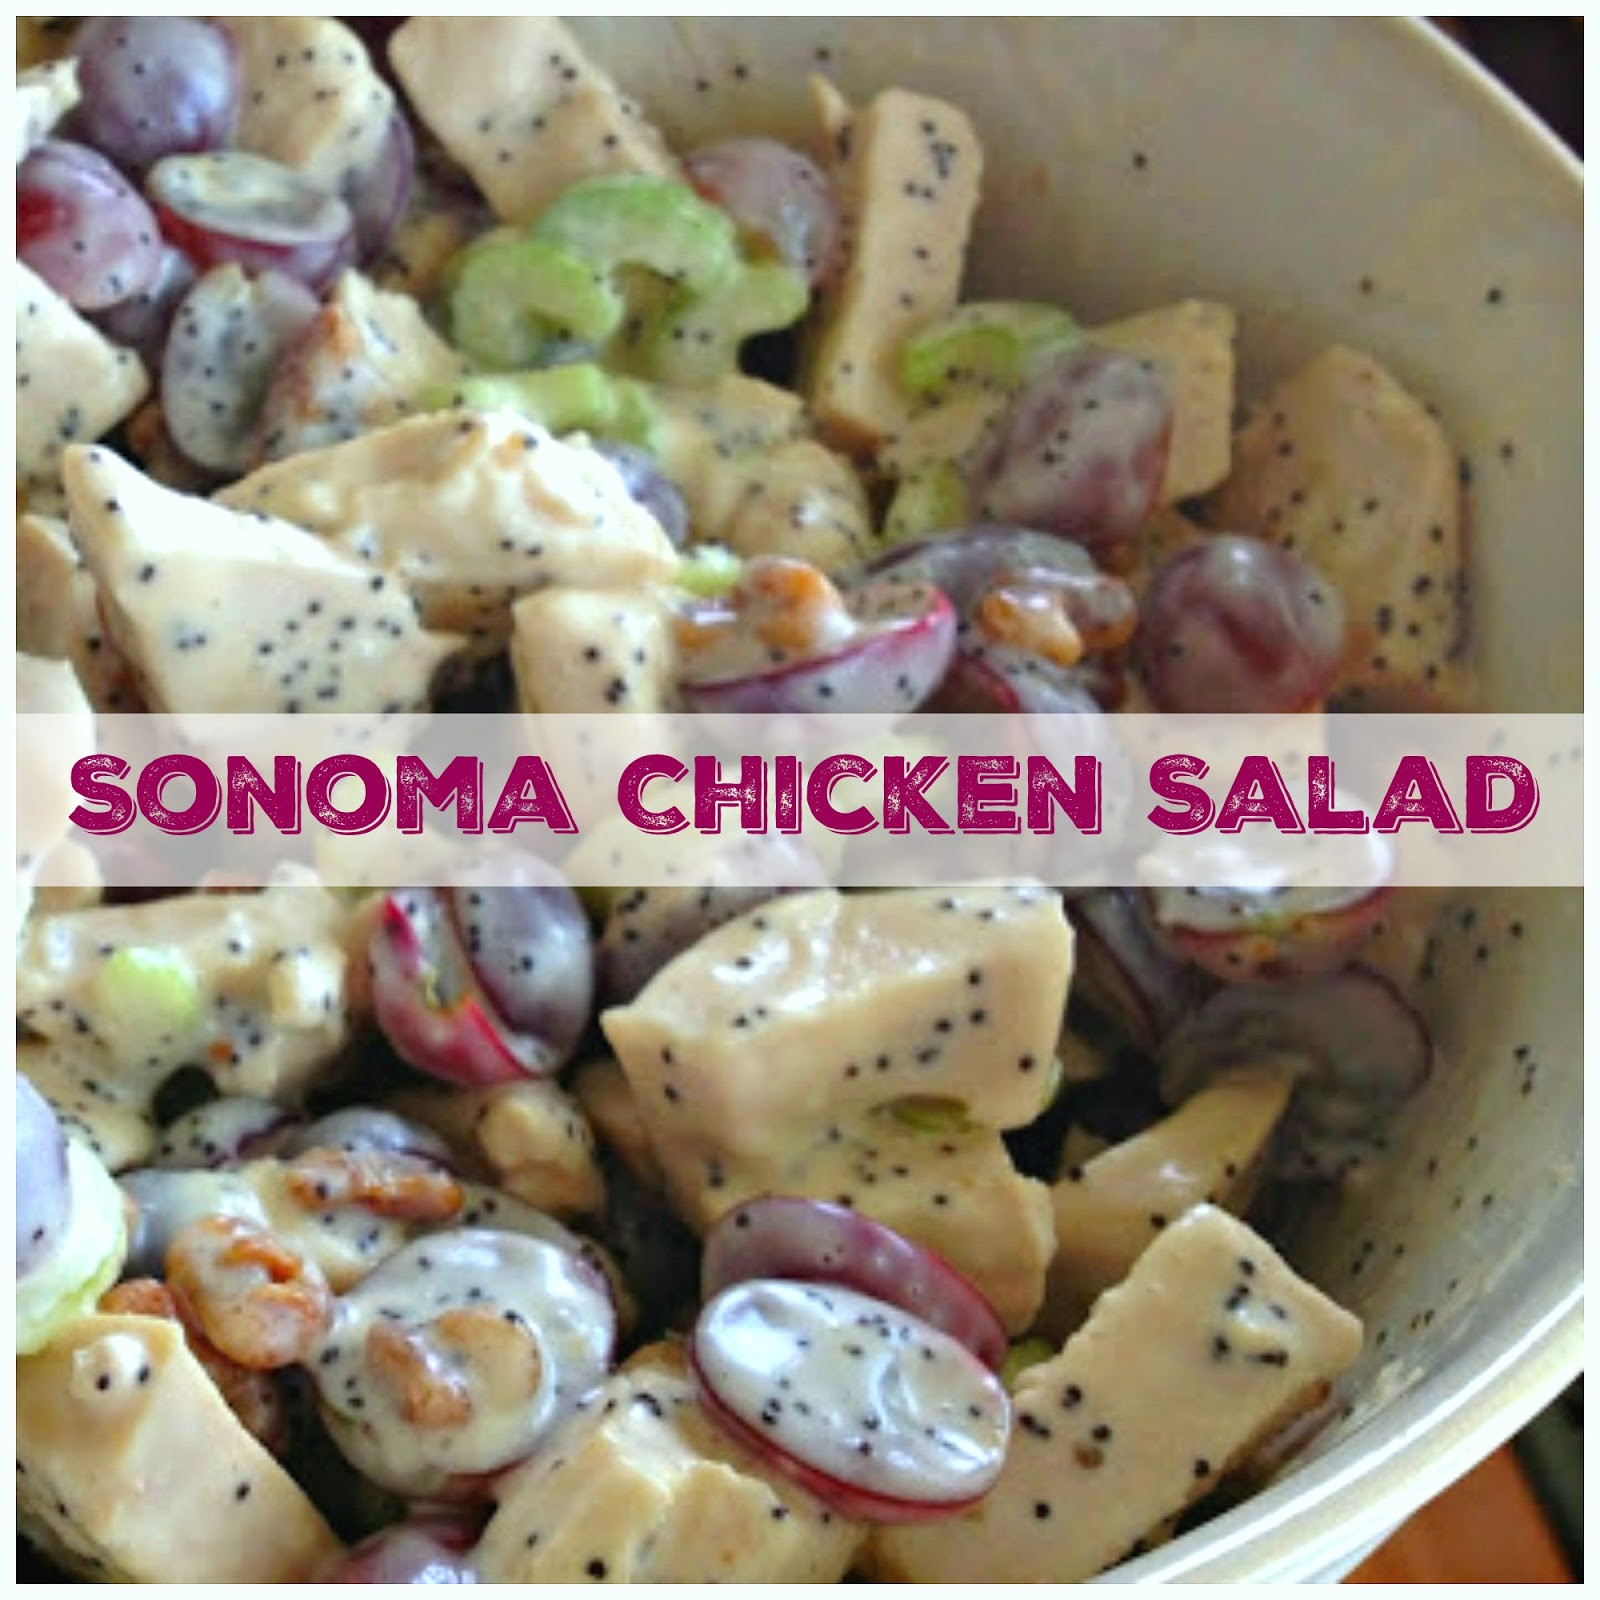 Sonoma Chicken Salad Recipe
 Tried & True Sonoma Chicken Salad Recipe Sweet Little